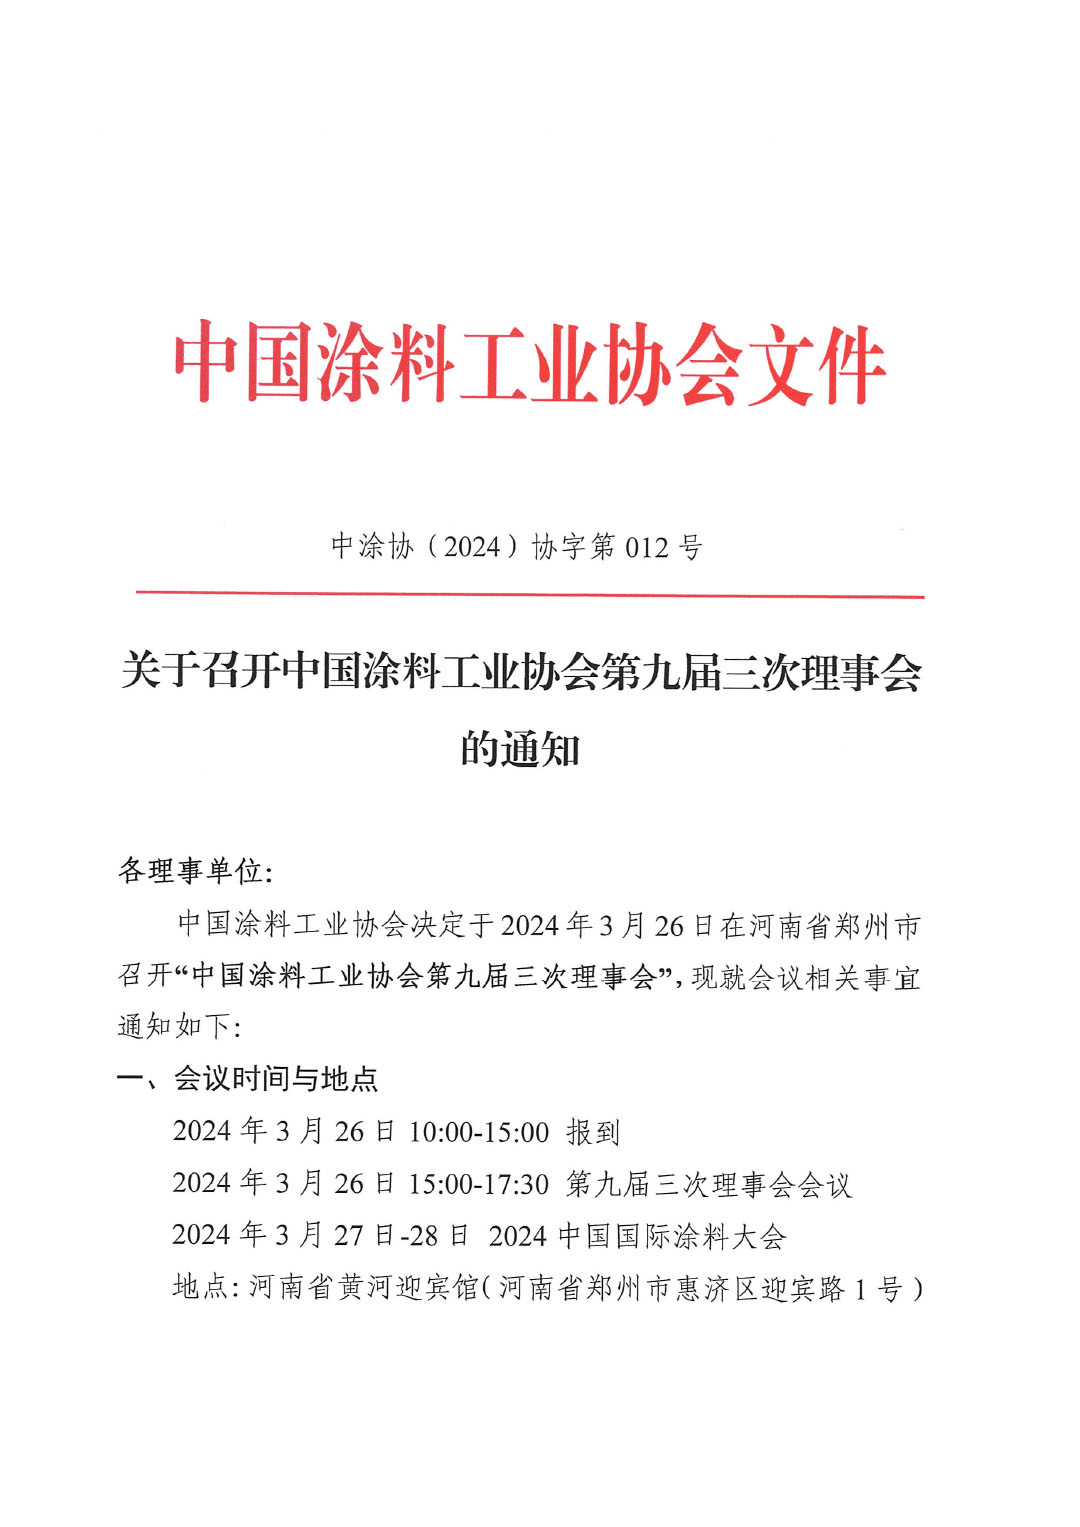 关于召开中国涂料工业协会第九届三次理事会的通知-1